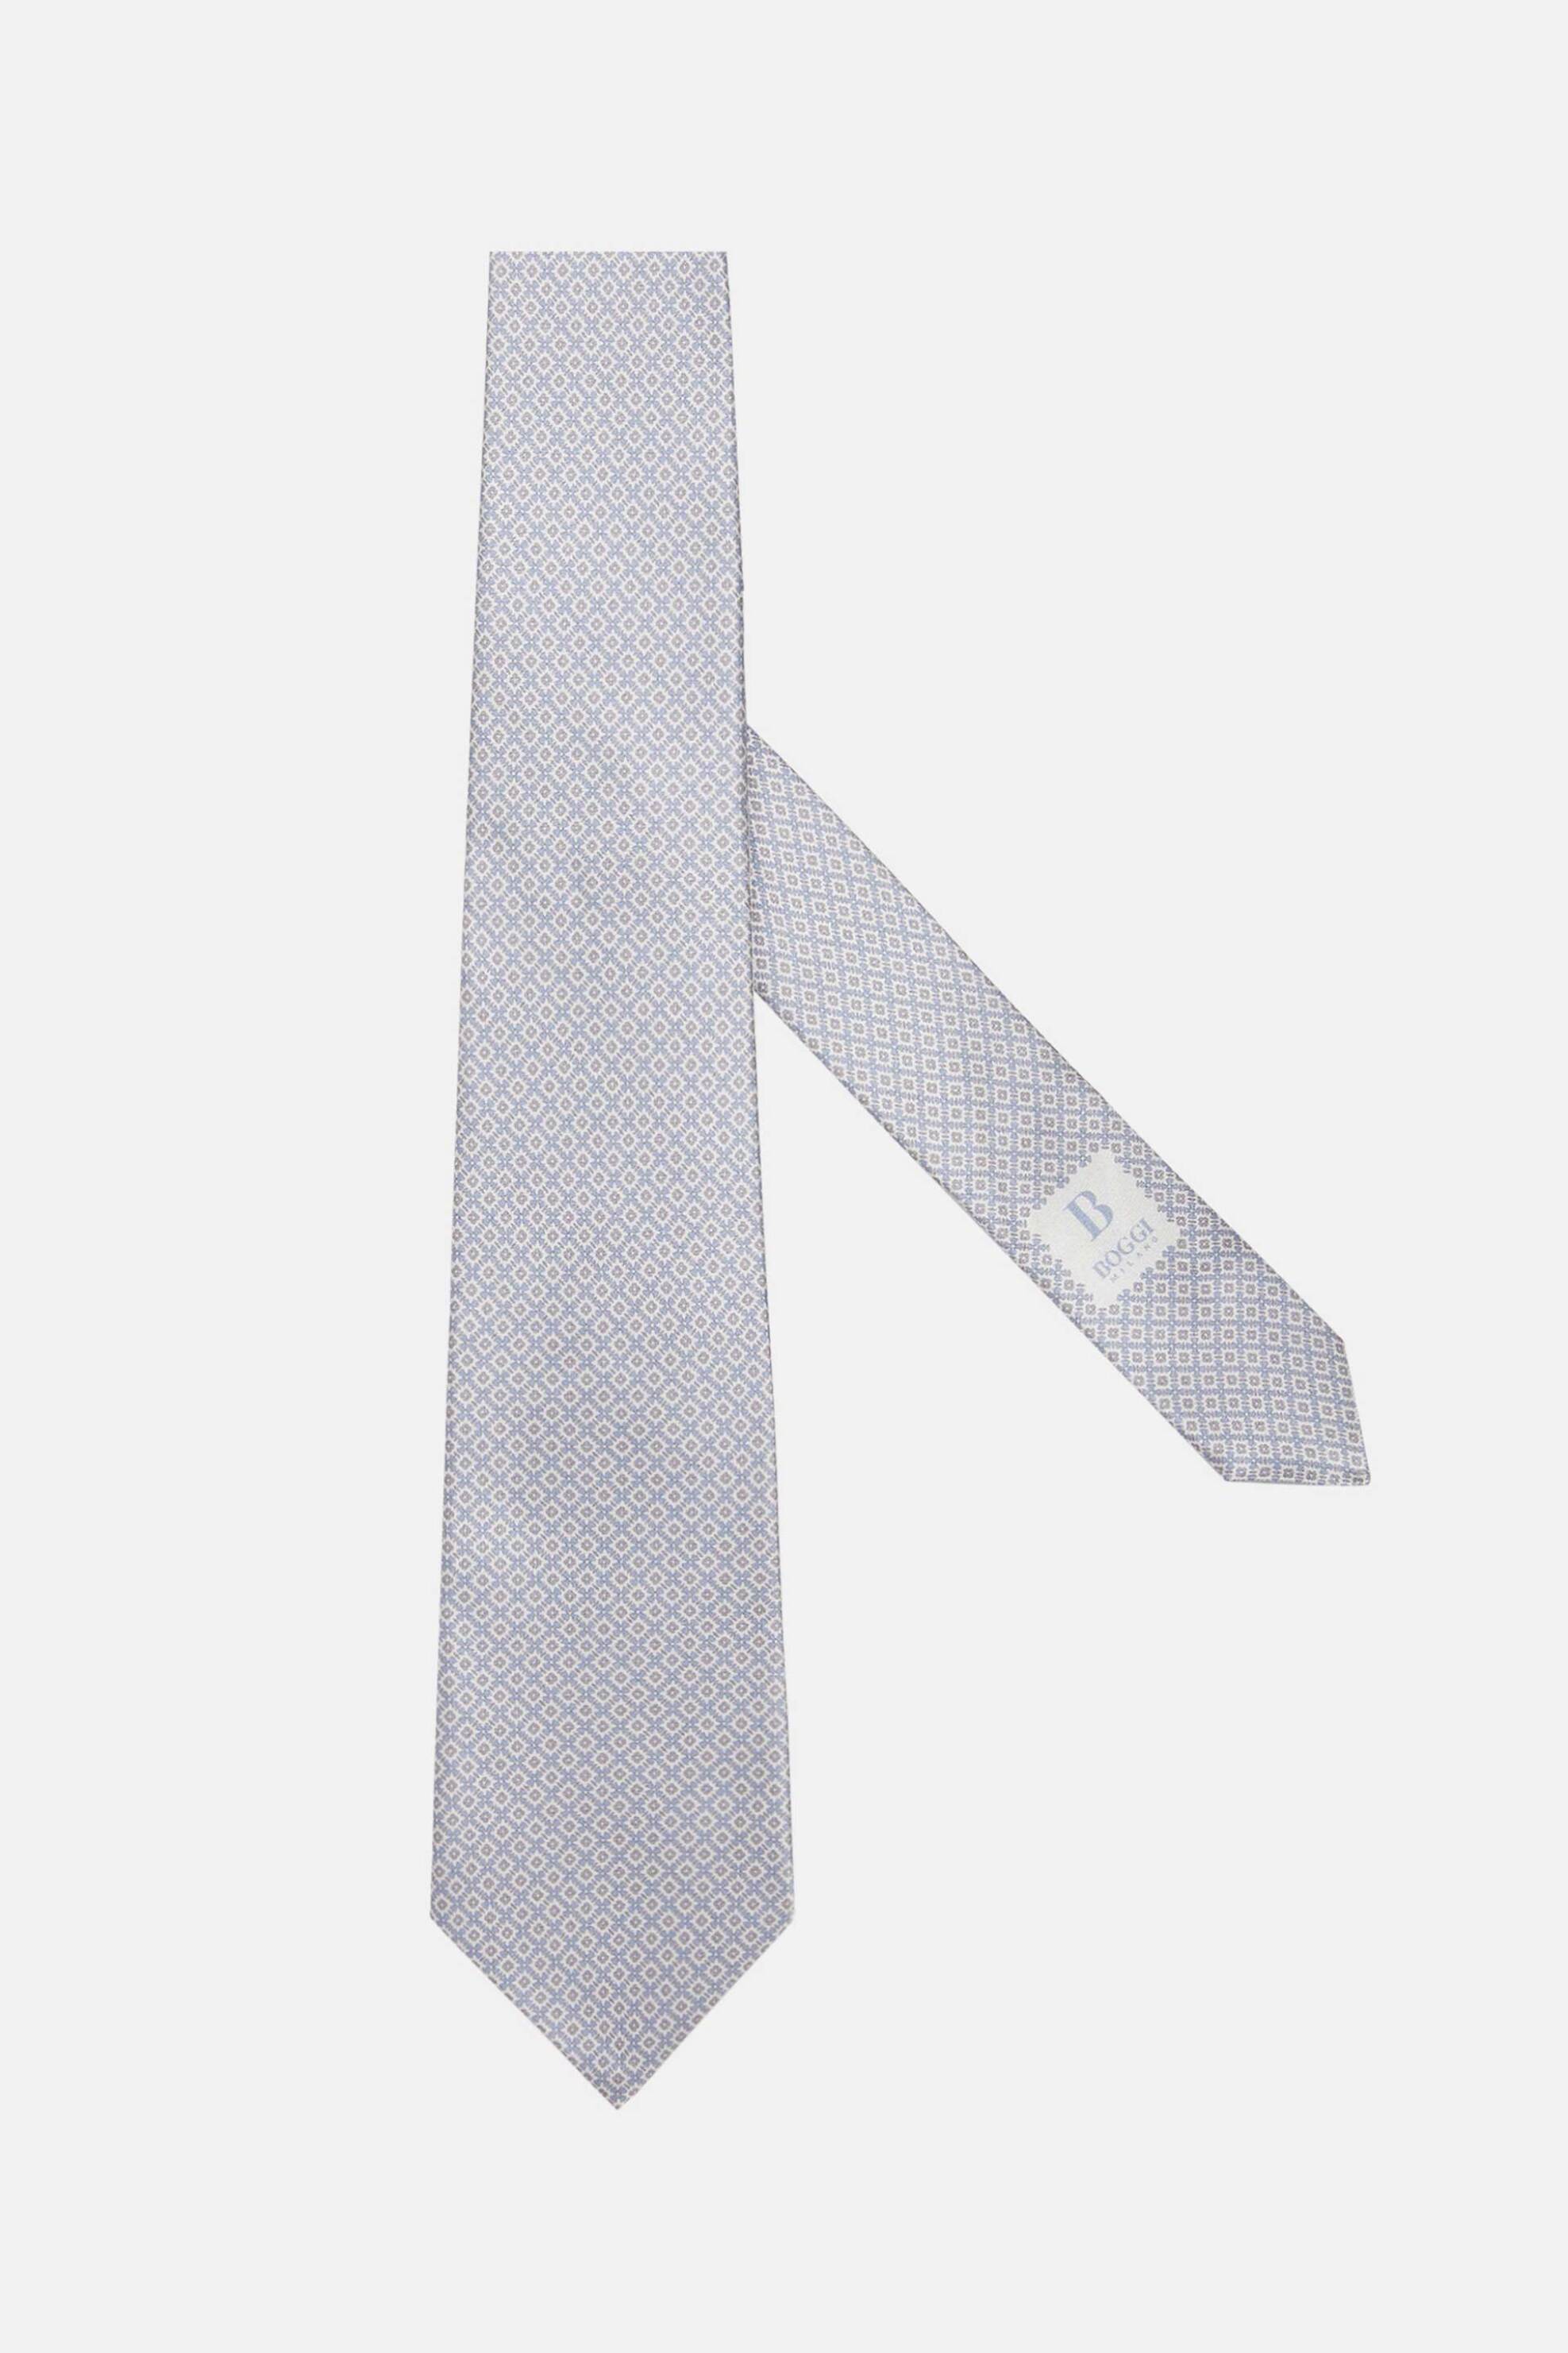 Ανδρική Μόδα > Ανδρικά Αξεσουάρ > Ανδρικές Γραβάτες & Παπιγιόν Boggi Milano ανδρική μεταξωτή γραβάτα με floral σχέδιο - BO24P070801 Μπλε Ανοιχτό